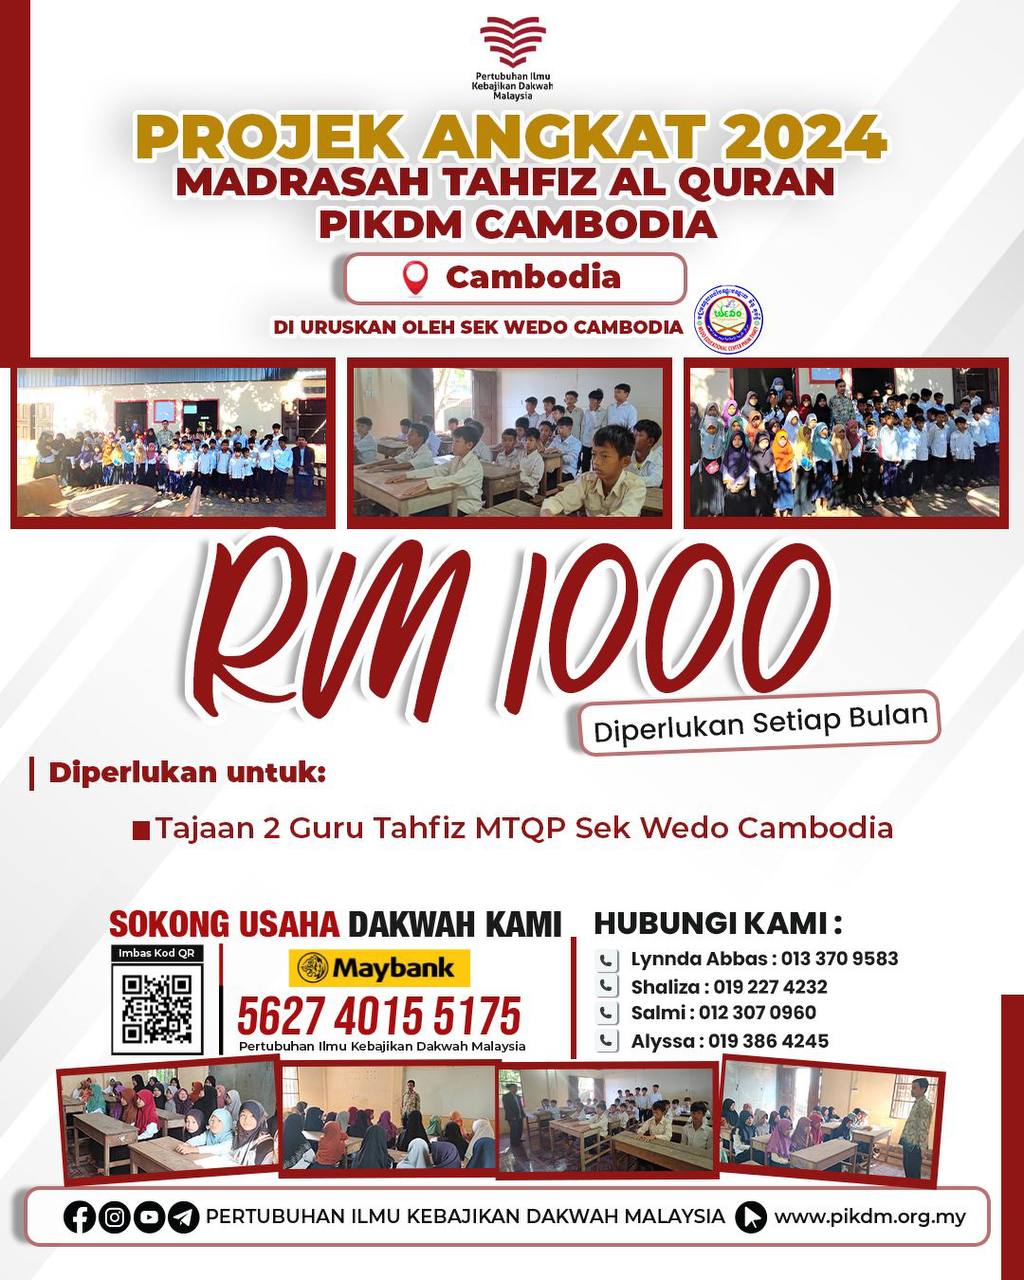 Projek Angkat 2024 Madrasah Tahfiz Al Quran Pikdm Cambodia